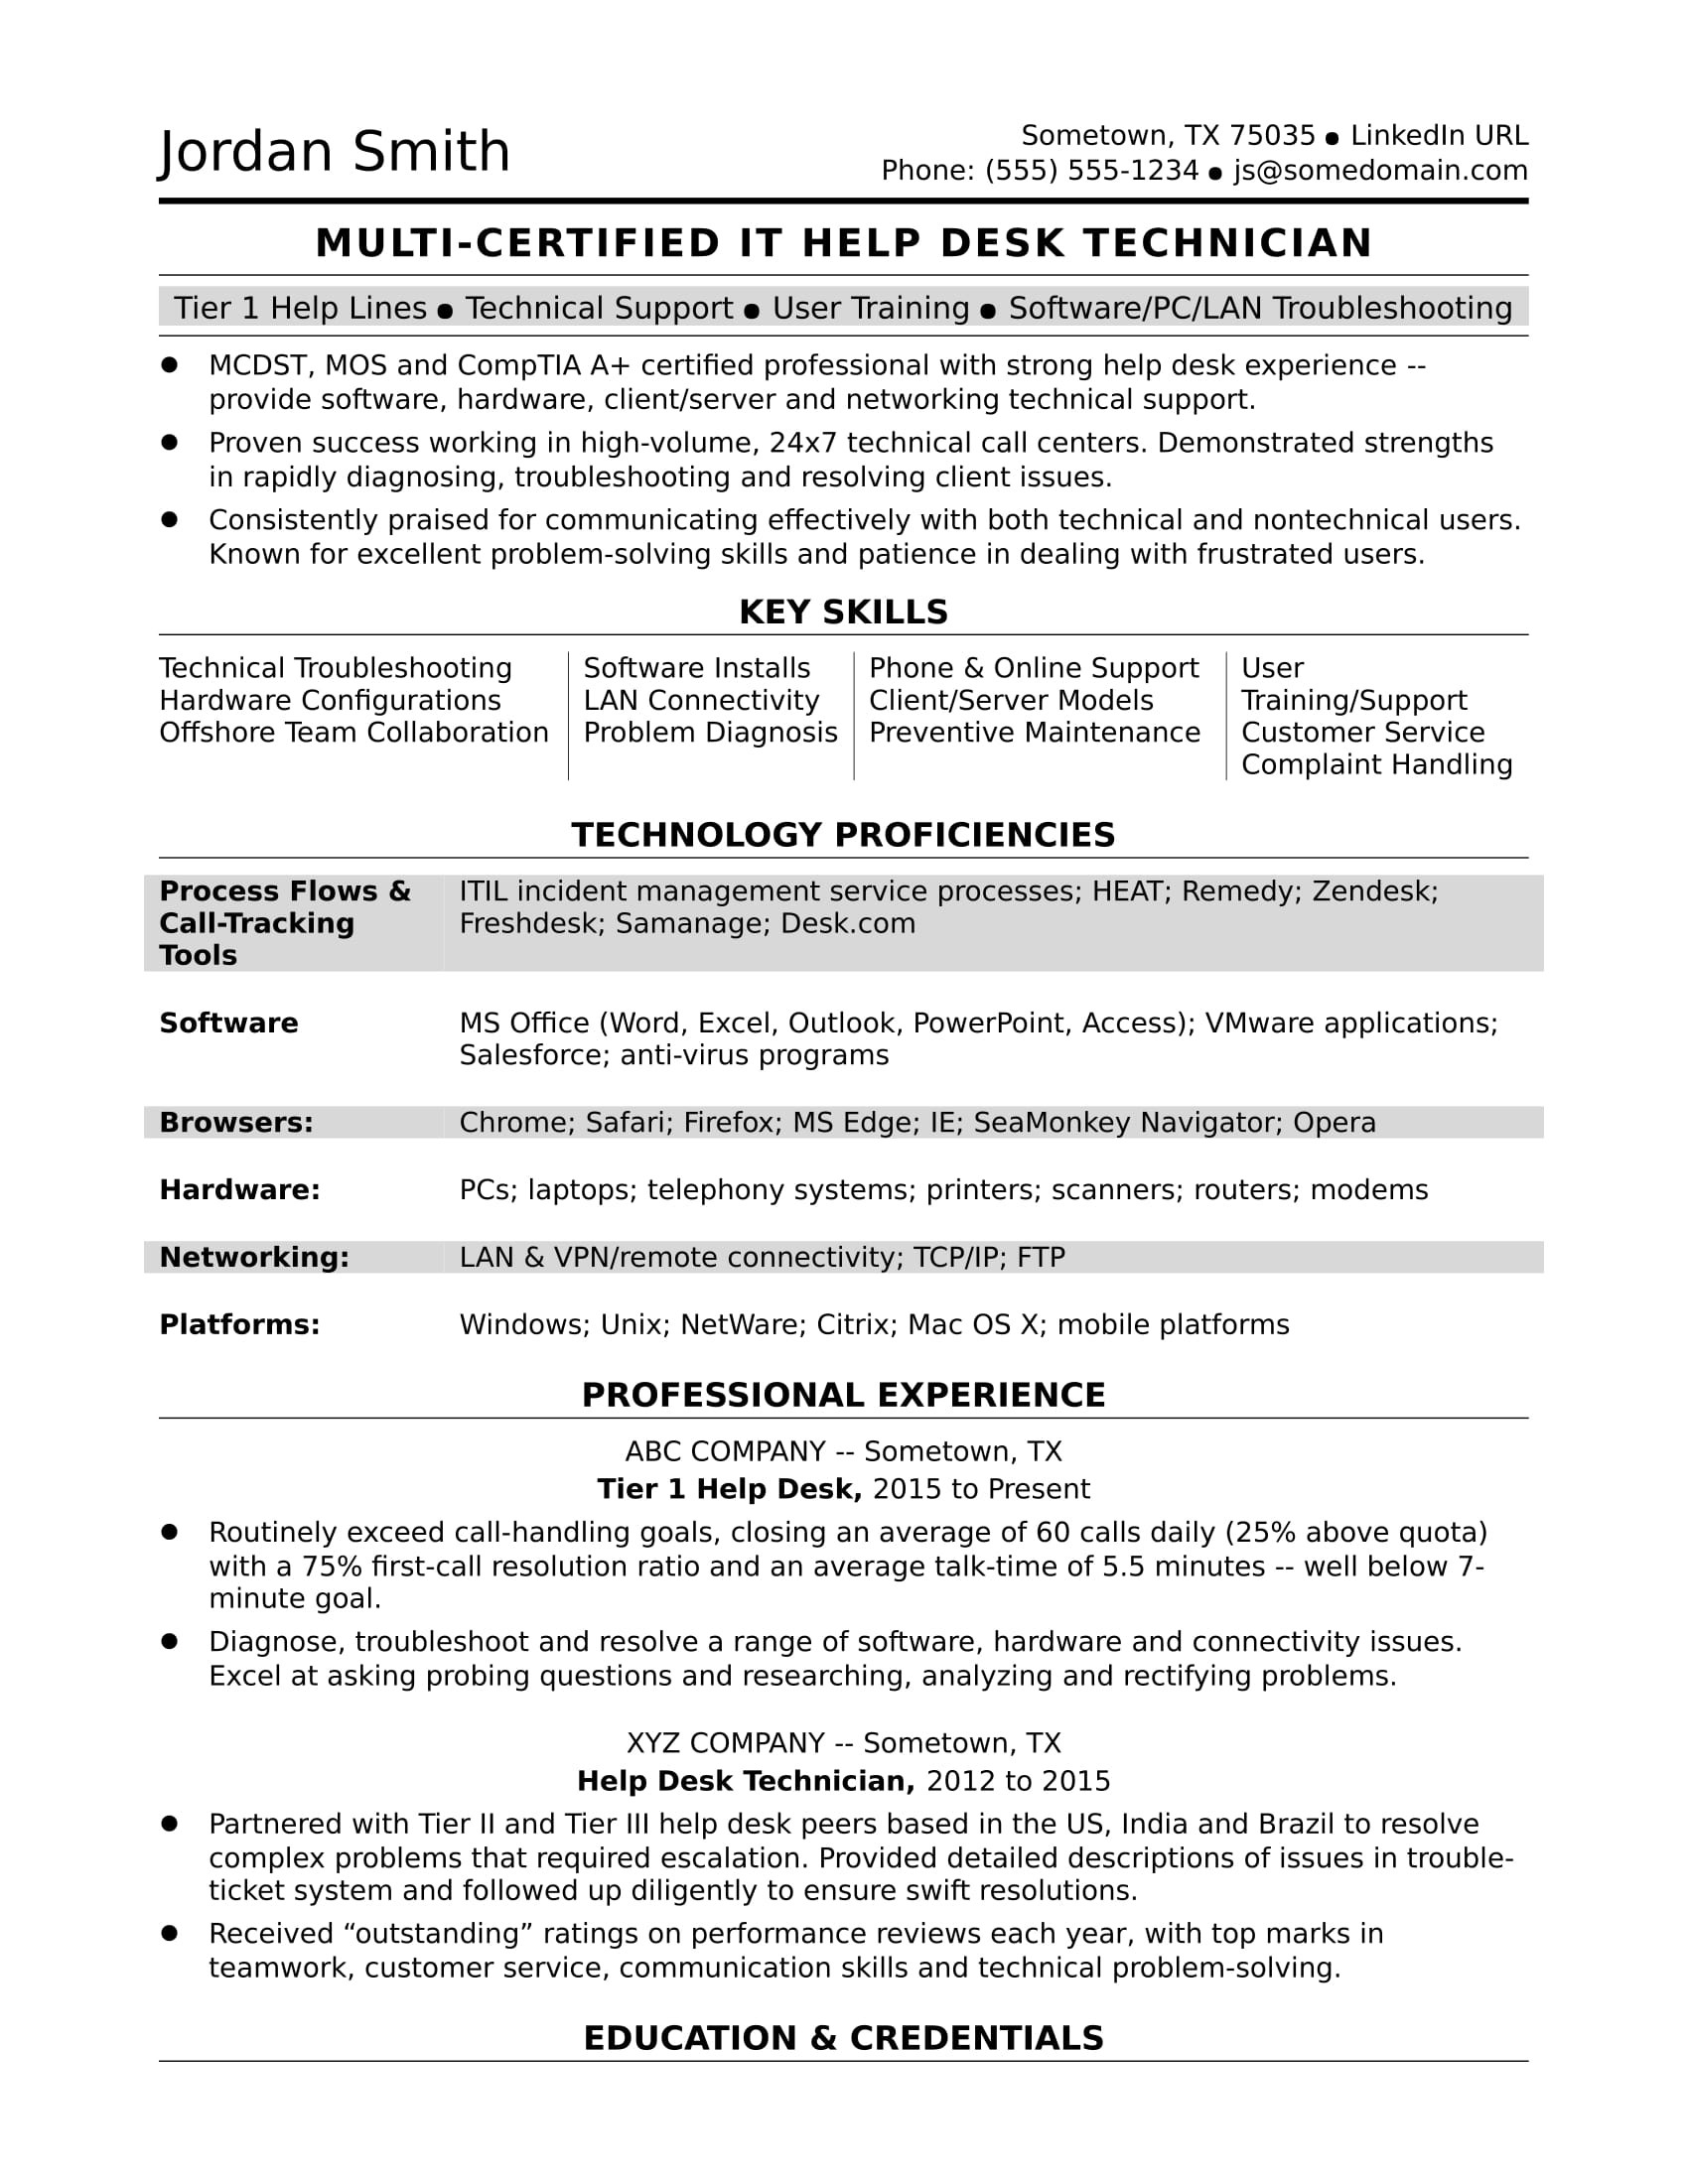 Entry Level Help Desk Resume Sample Sample Resume for A Midlevel It Help Desk Professional Monster.com